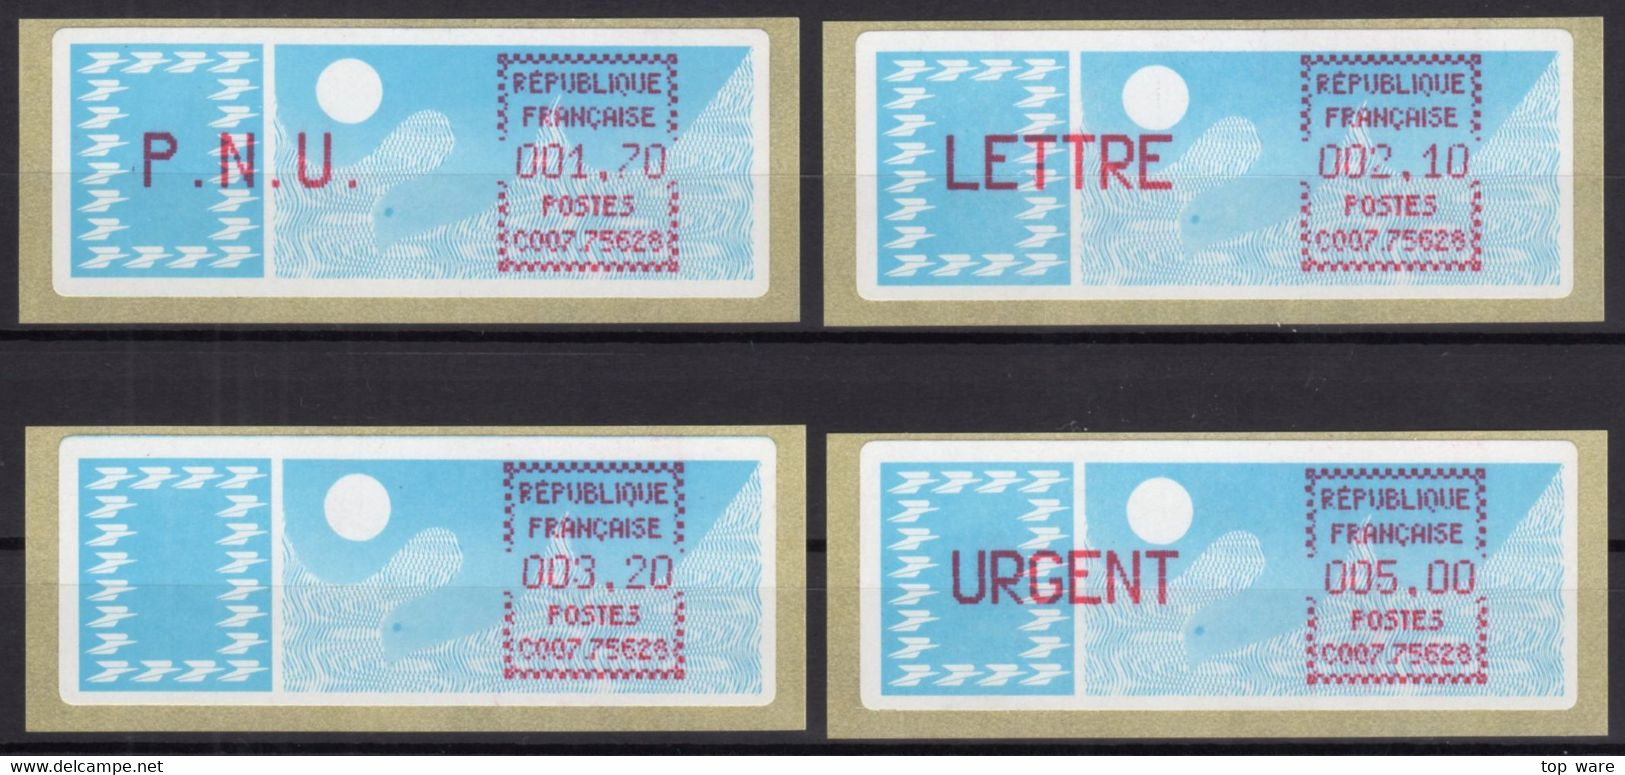 France ATM Stamps C007.75628 Michel 6.19 Zd Series ZS1 MNH / Crouzet LSA Distributeurs Automatenmarken Frama Lisa - 1985 « Carrier » Papier